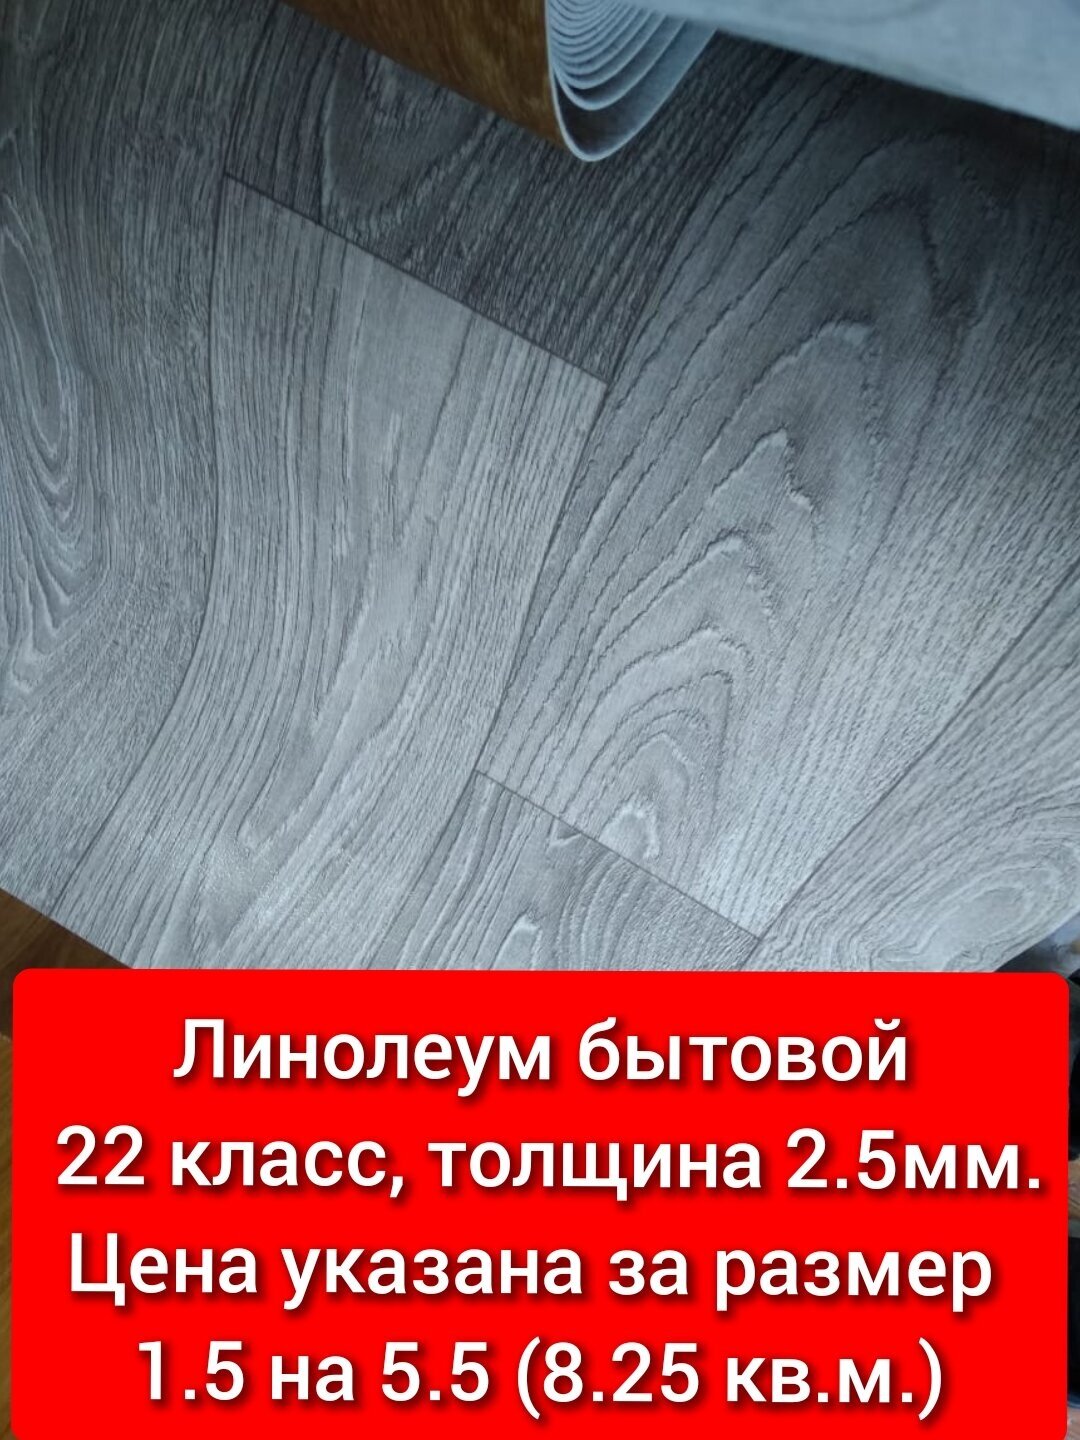 Линолеум 1.5 на 5.5 ТБ-4 (бытовой,22 класс) серый цвет